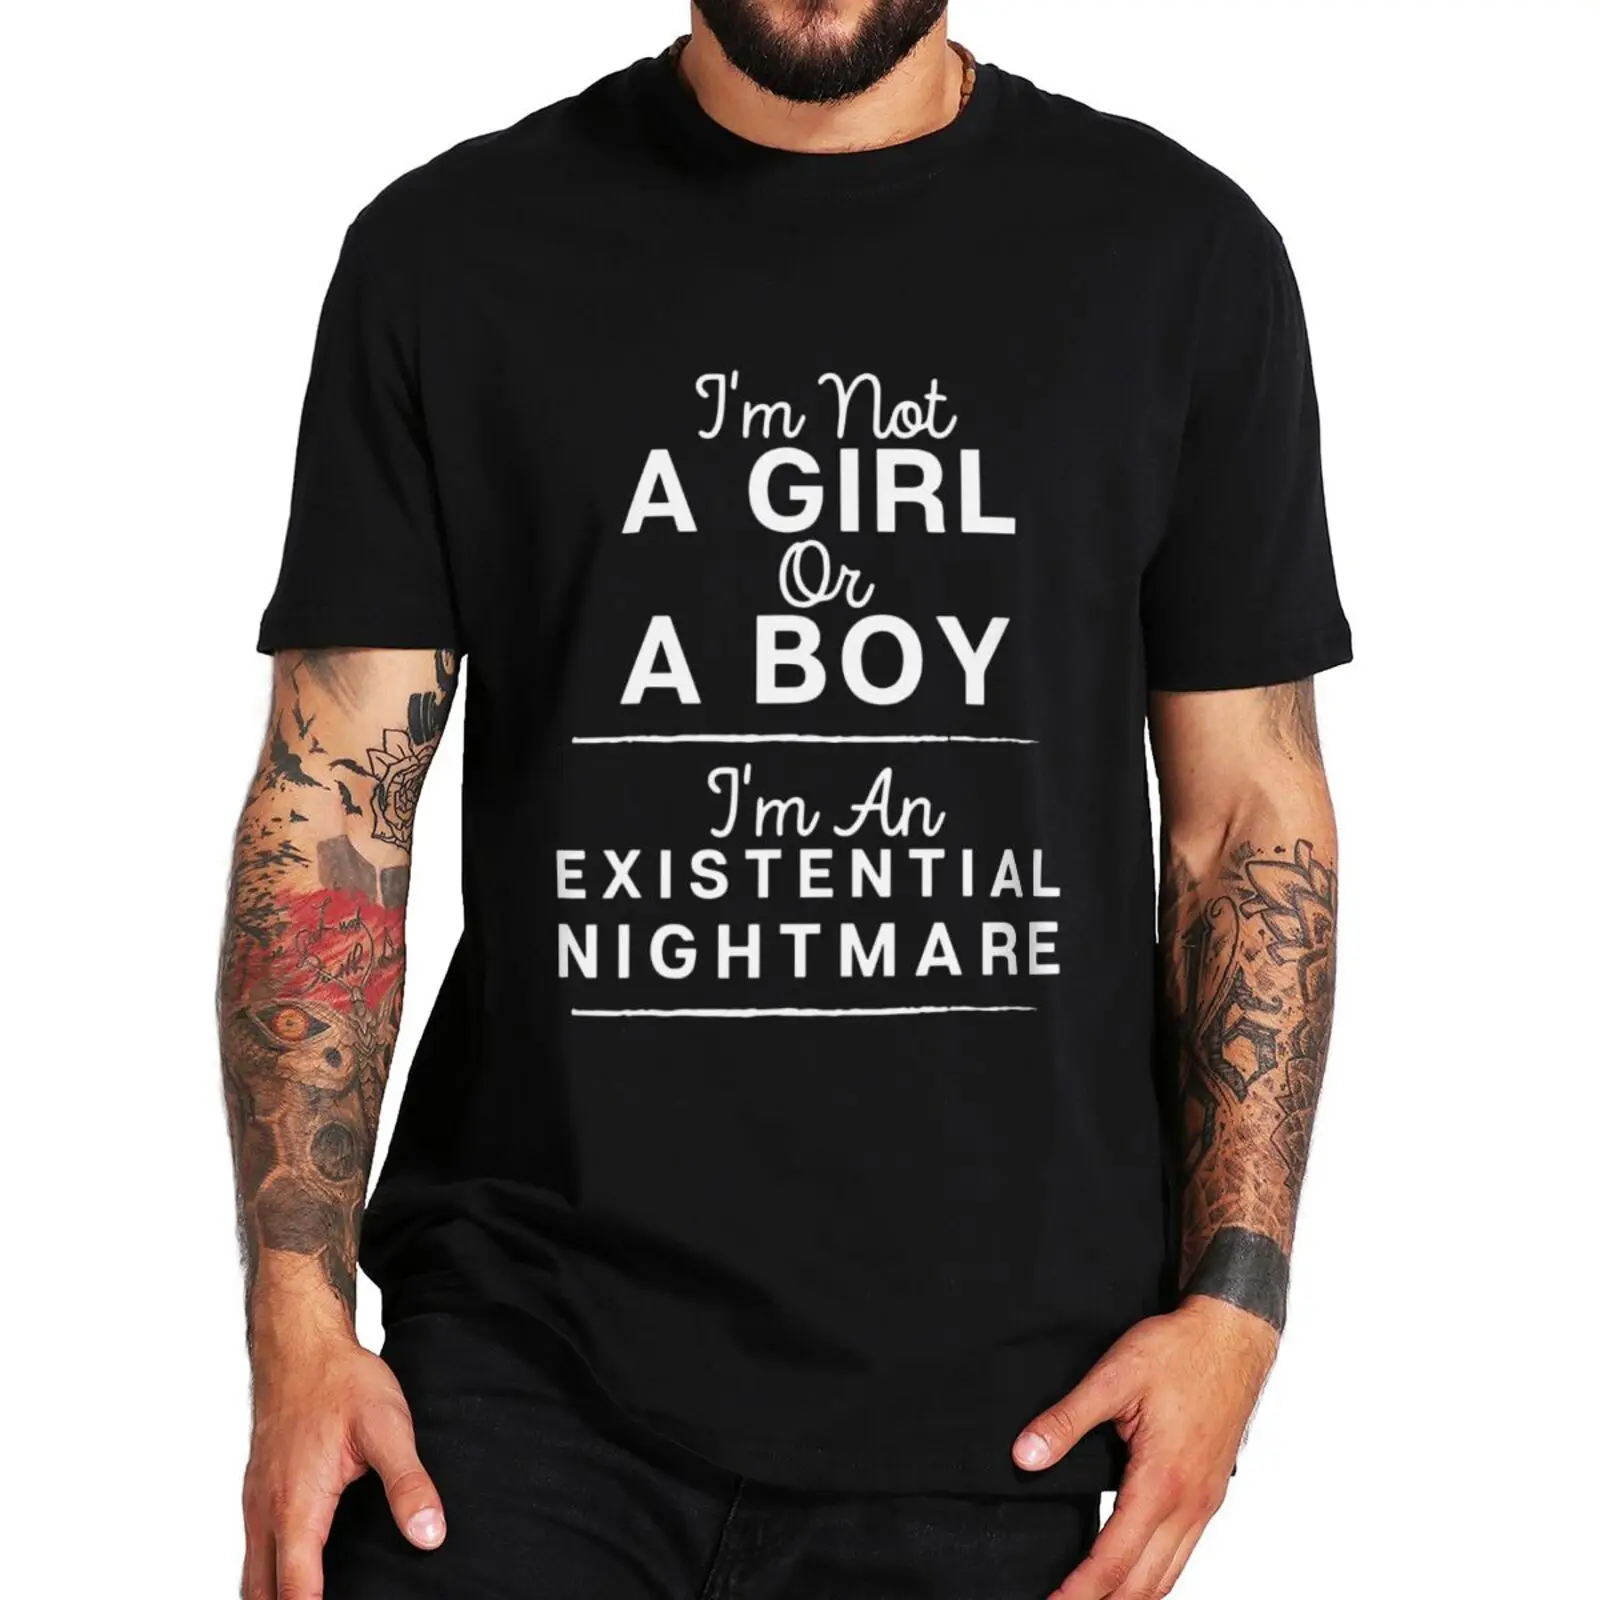 

I'm Not A Girl Or Boy I'm An T Shirt Funny Sayings Humor Jokes Tee Tops Casual 100% Cotton Unisex Summer Oversized T-shirts